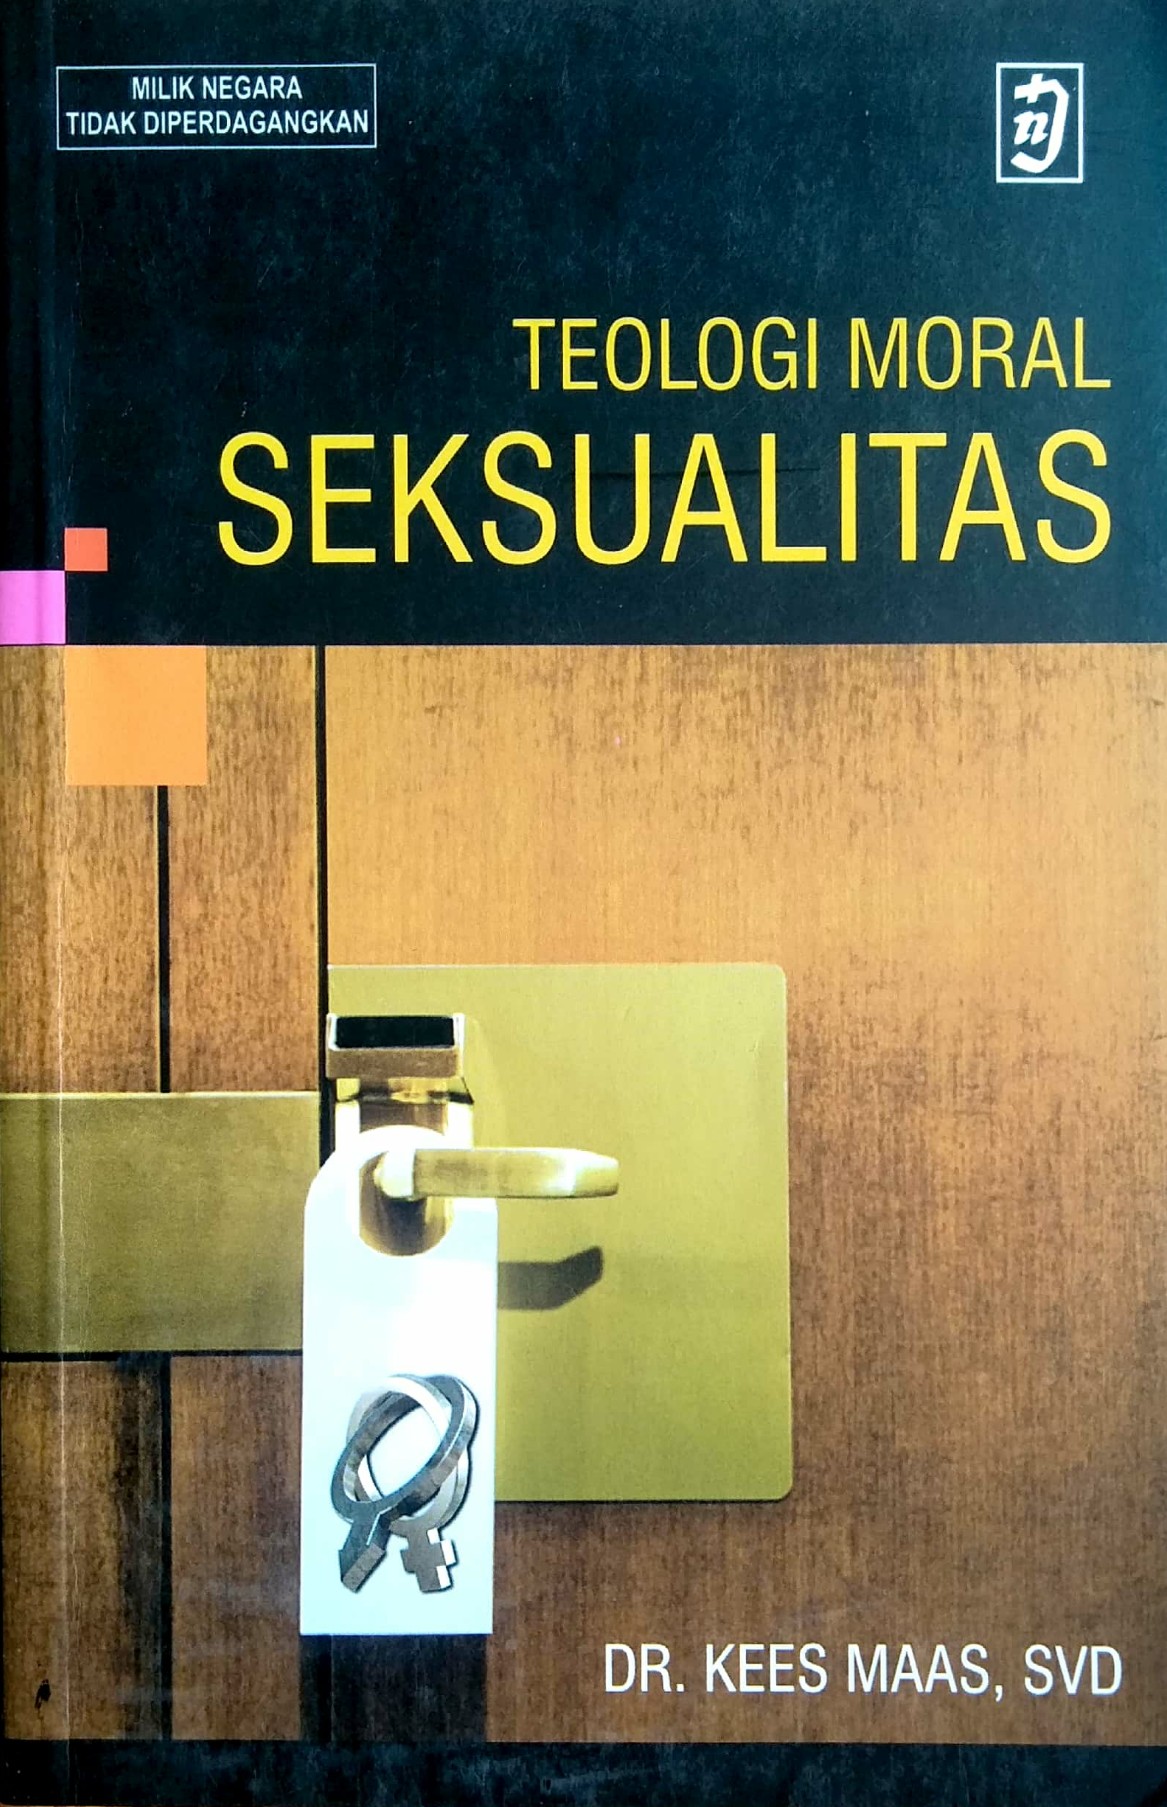 TEOLOGI MORAL SEKSUALITAS